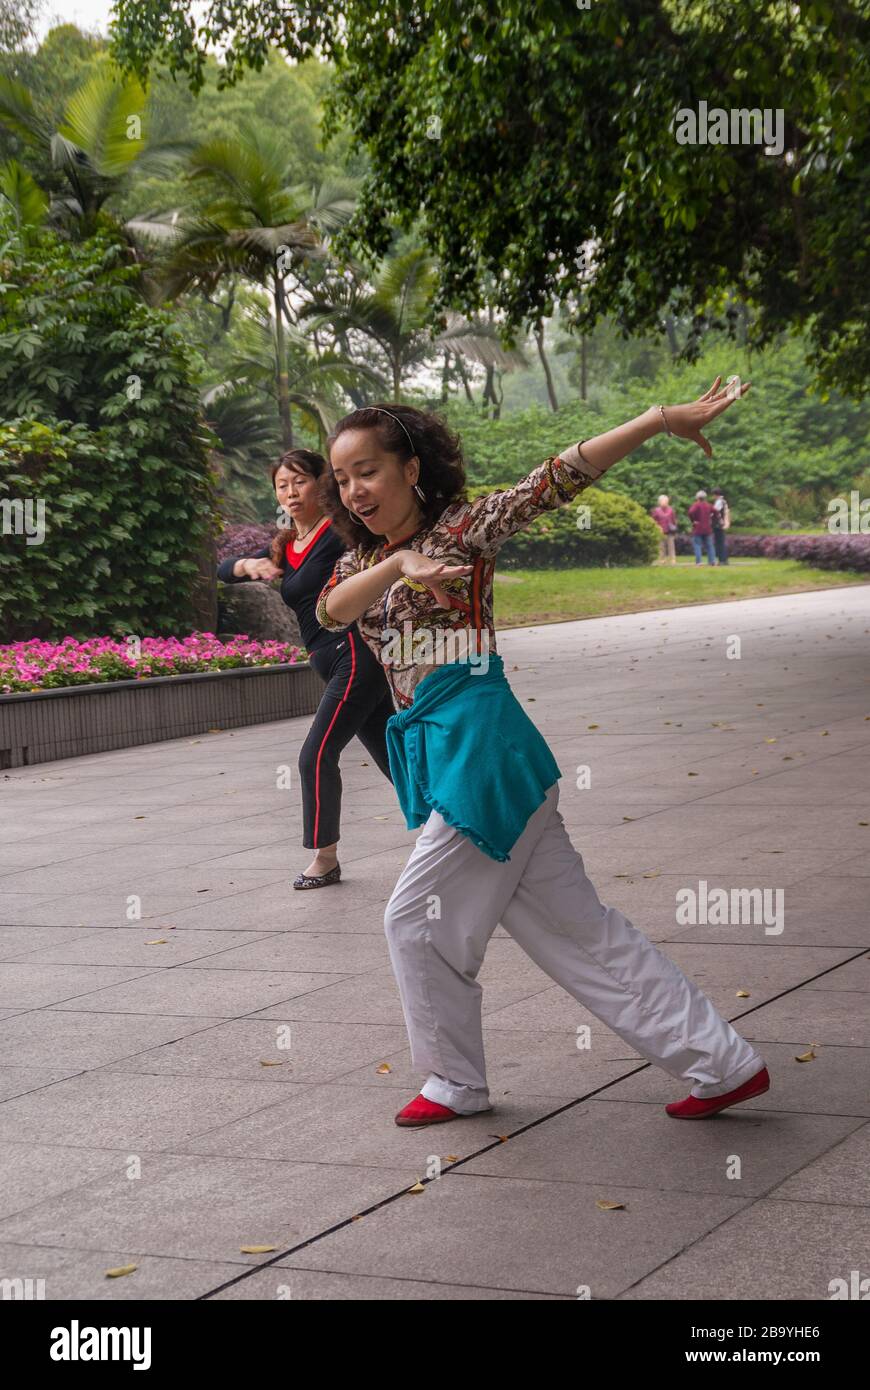 Chongqing, Chine - 9 mai 2010 : spectacle de danse de groupe dans le zoo Park. Gros plan de 2 femmes en mouvement synchronisé sur la musique. Feuillage vert. Banque D'Images